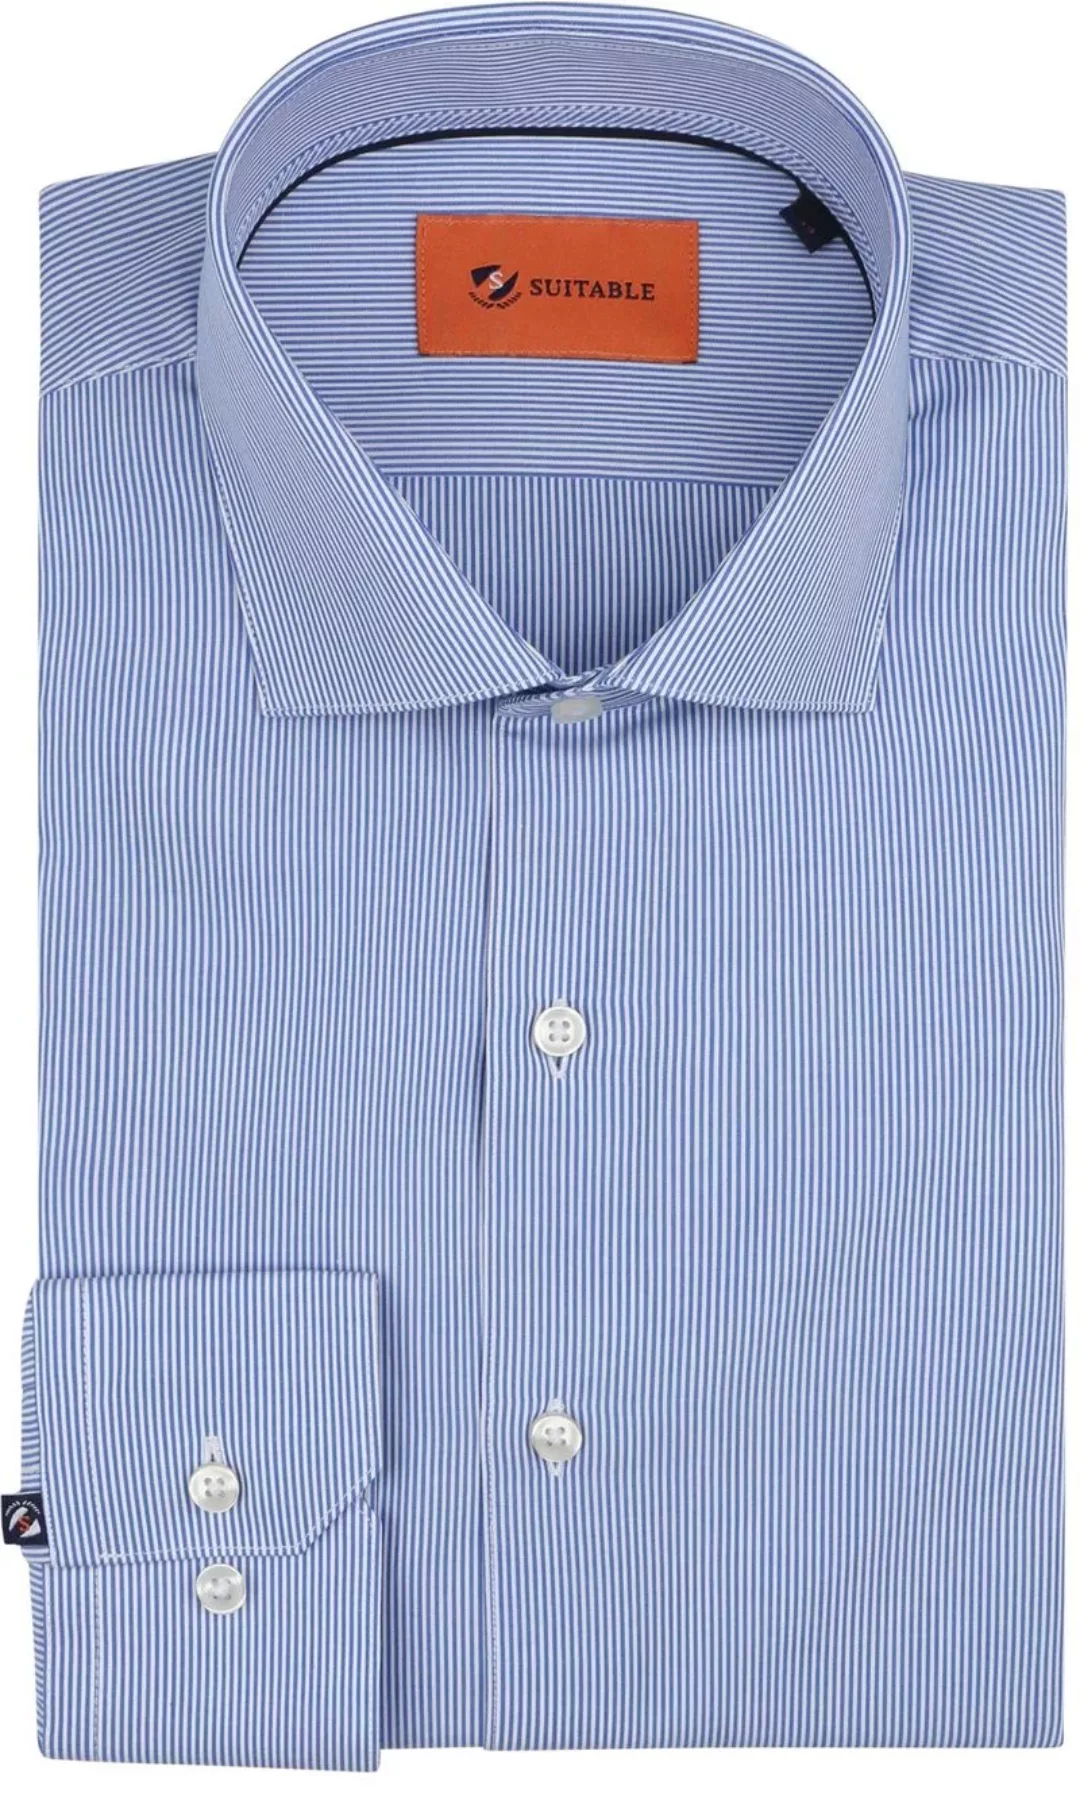 Suitable Hemd Streifen Blau - Größe 42 günstig online kaufen